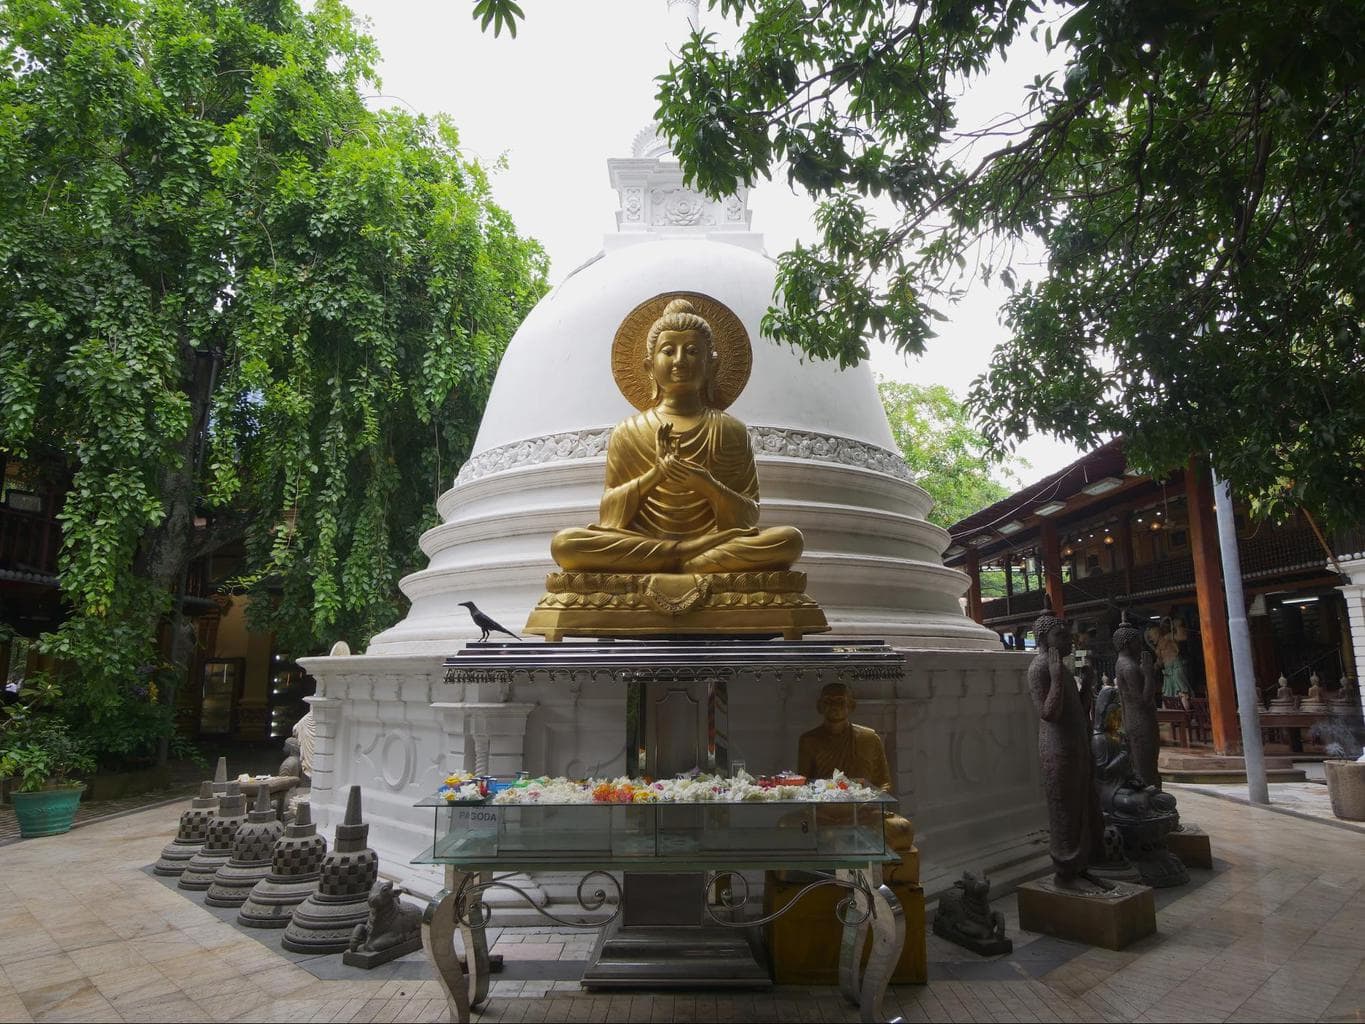 Samadhi Buddha stupa in Gangaramaya